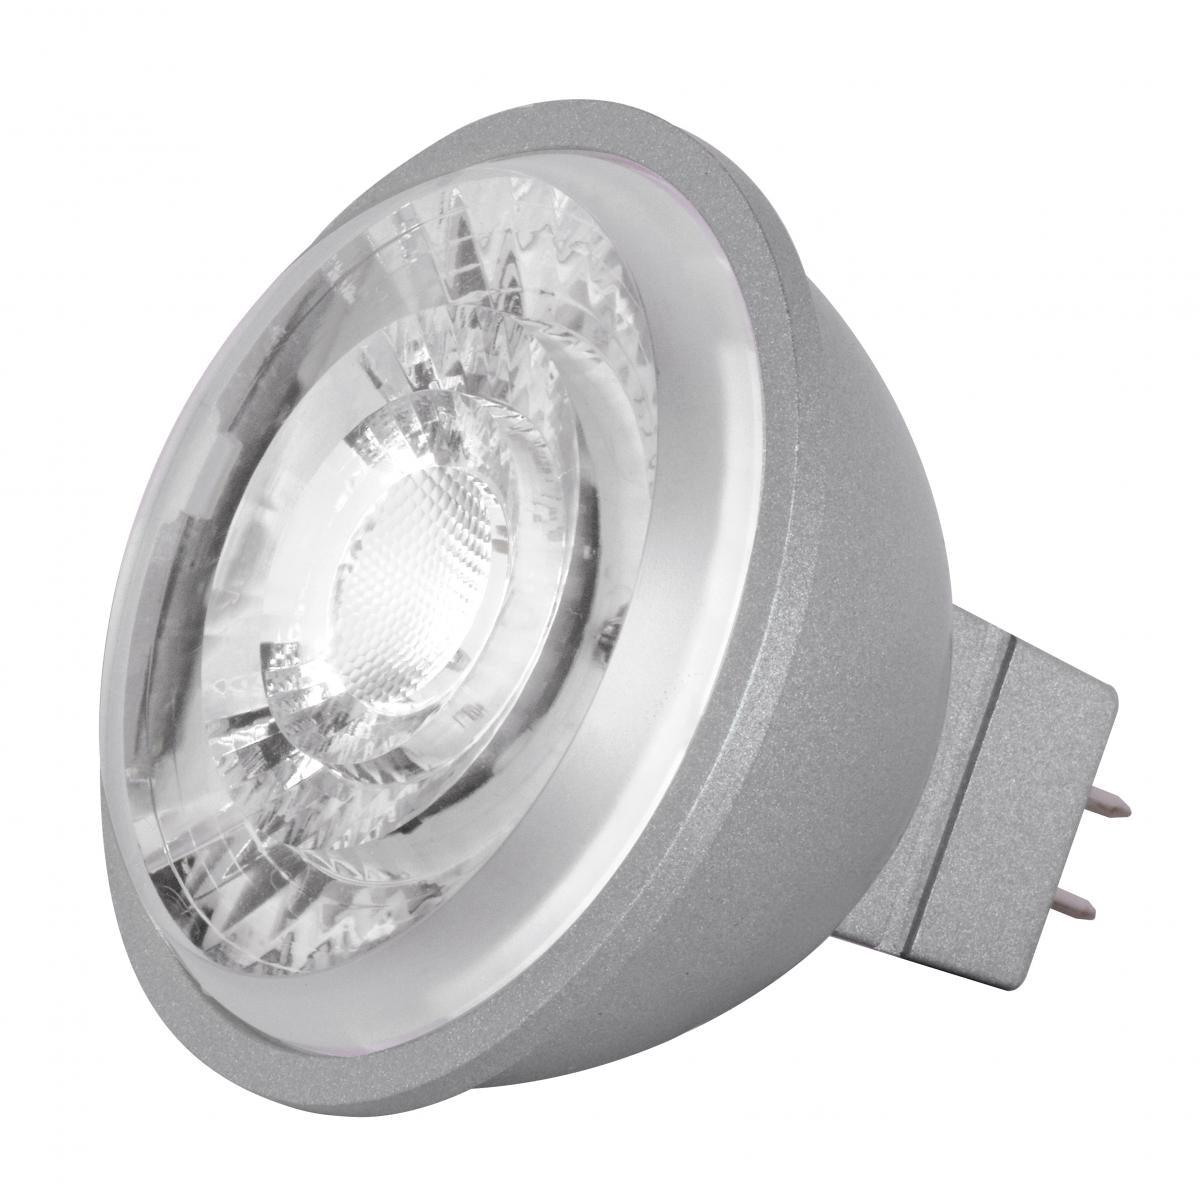 MR16 Reflector LED bulb, 8 watt, 490 Lumens, 5000K, GU5.3 Base, 15 Deg. Spot - Bees Lighting